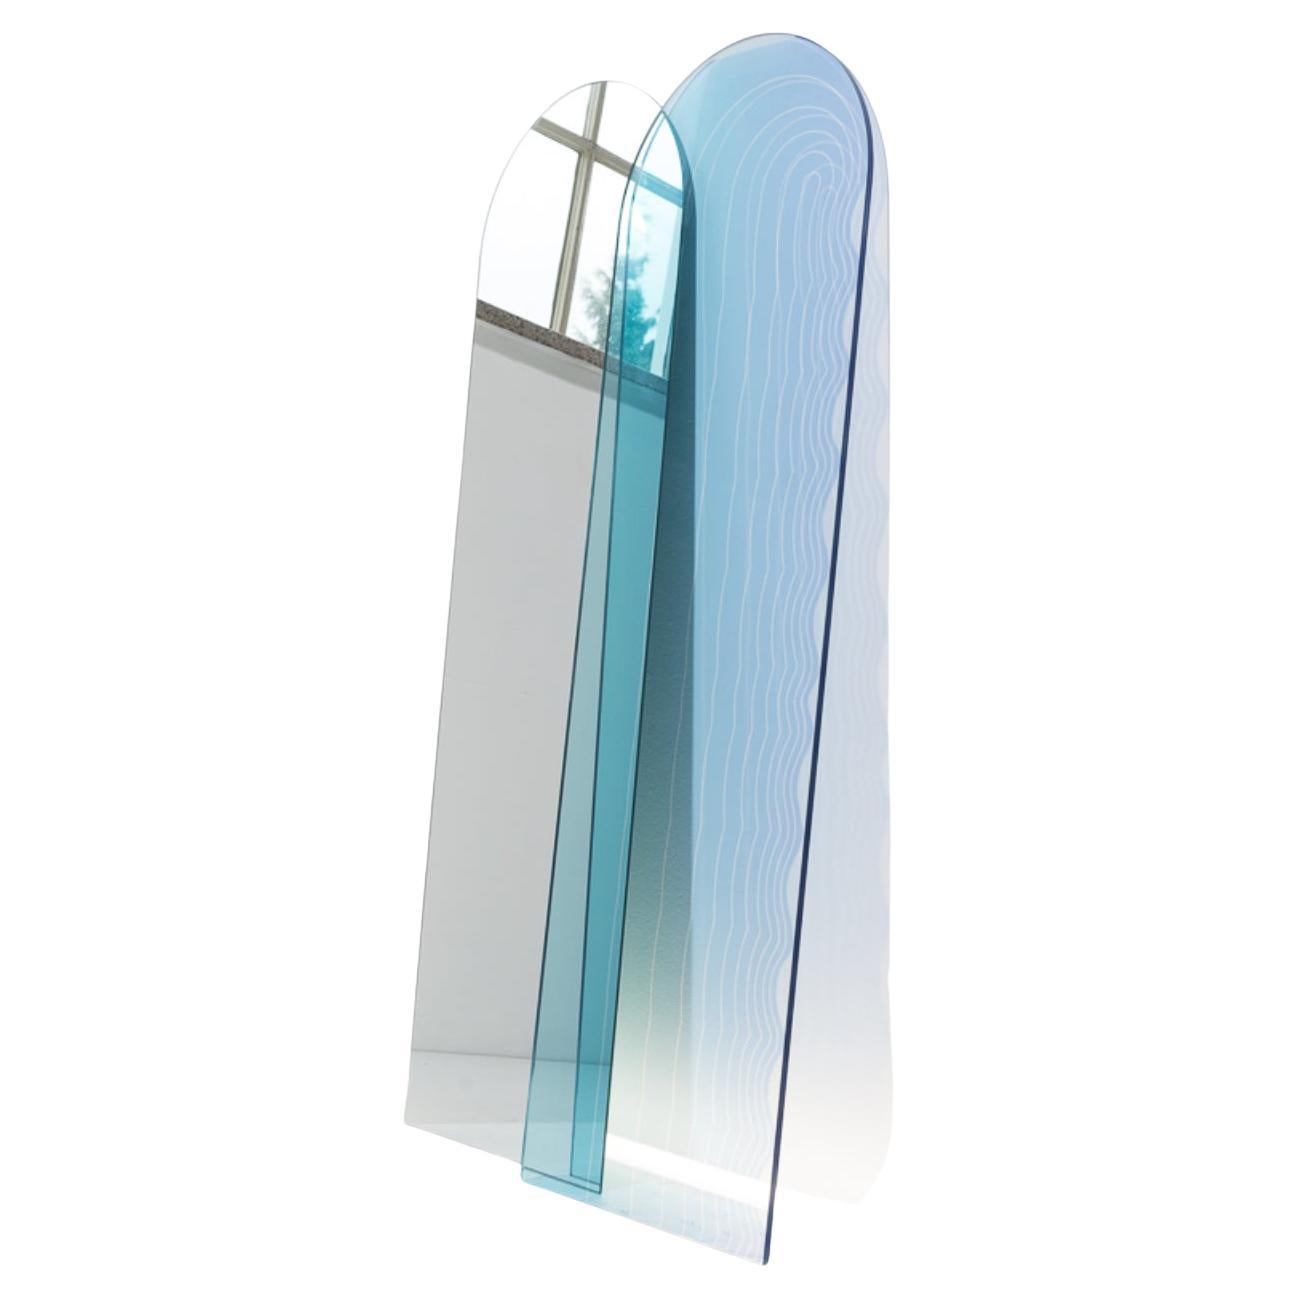 Set of Wave Infinity Glass Panel and Mirror by Studio Thier & Van Daalen